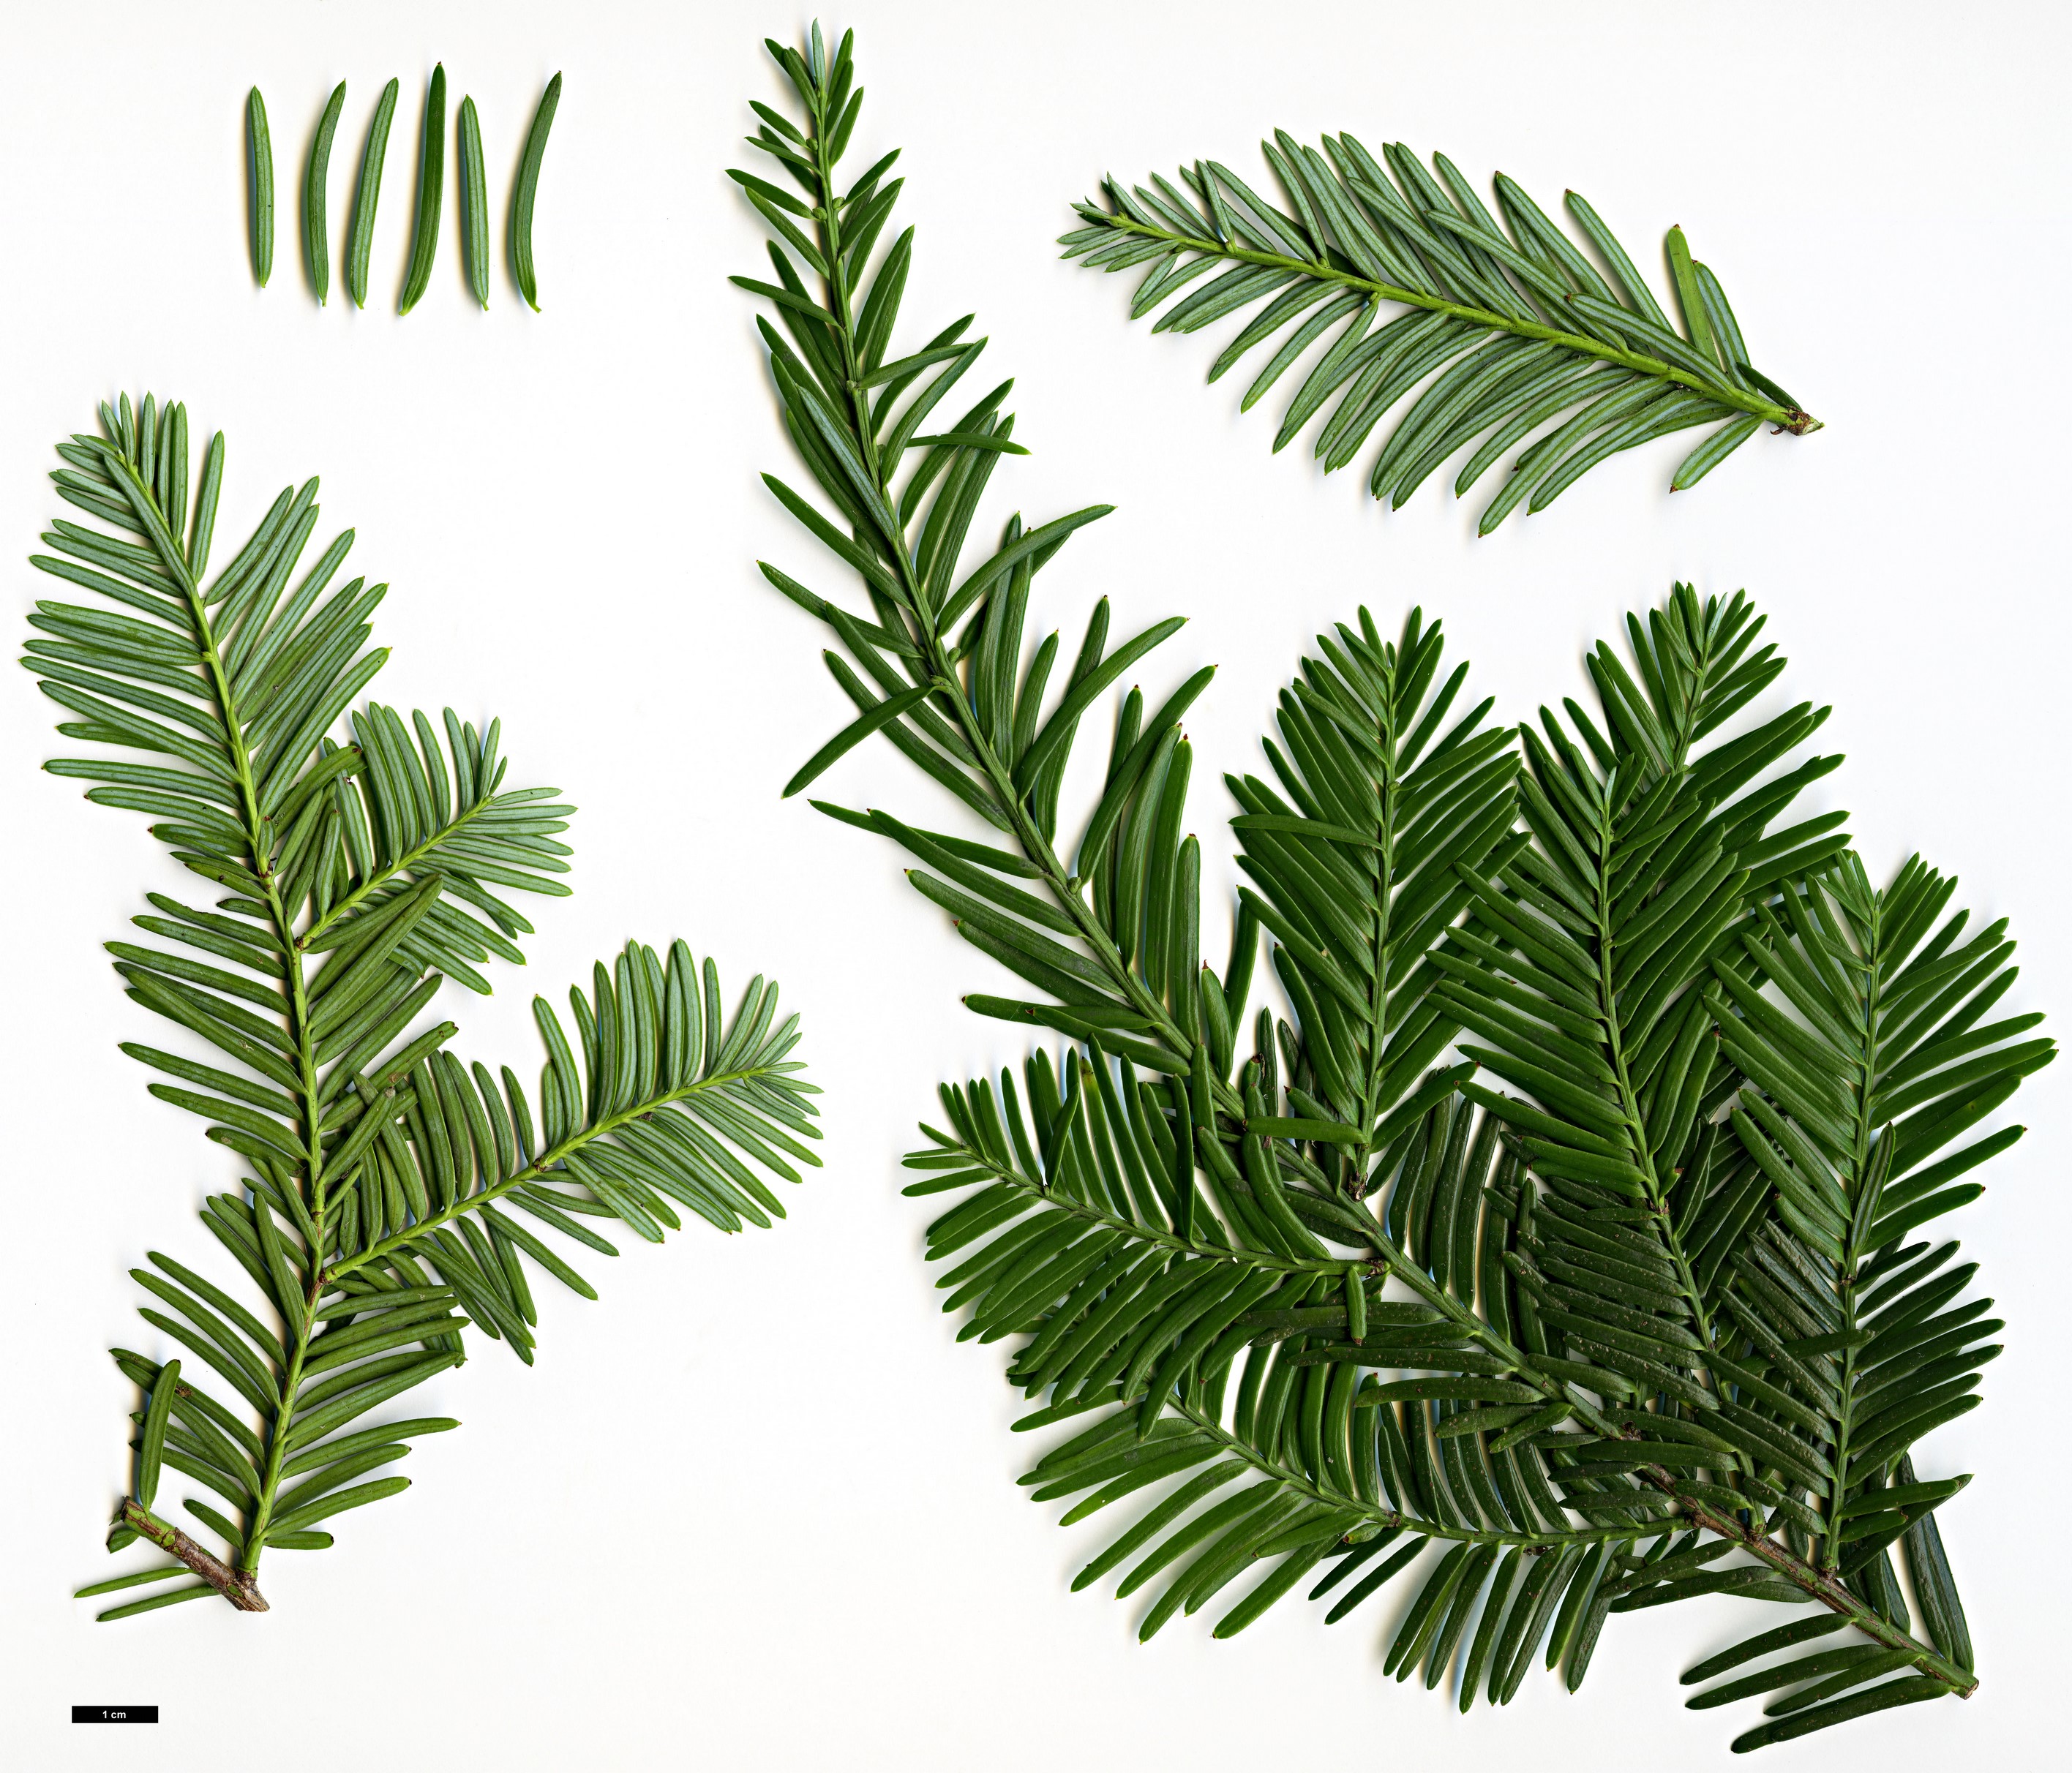 High resolution image: Family: Podocarpaceae - Genus: Podocarpus - Taxon: chingianus